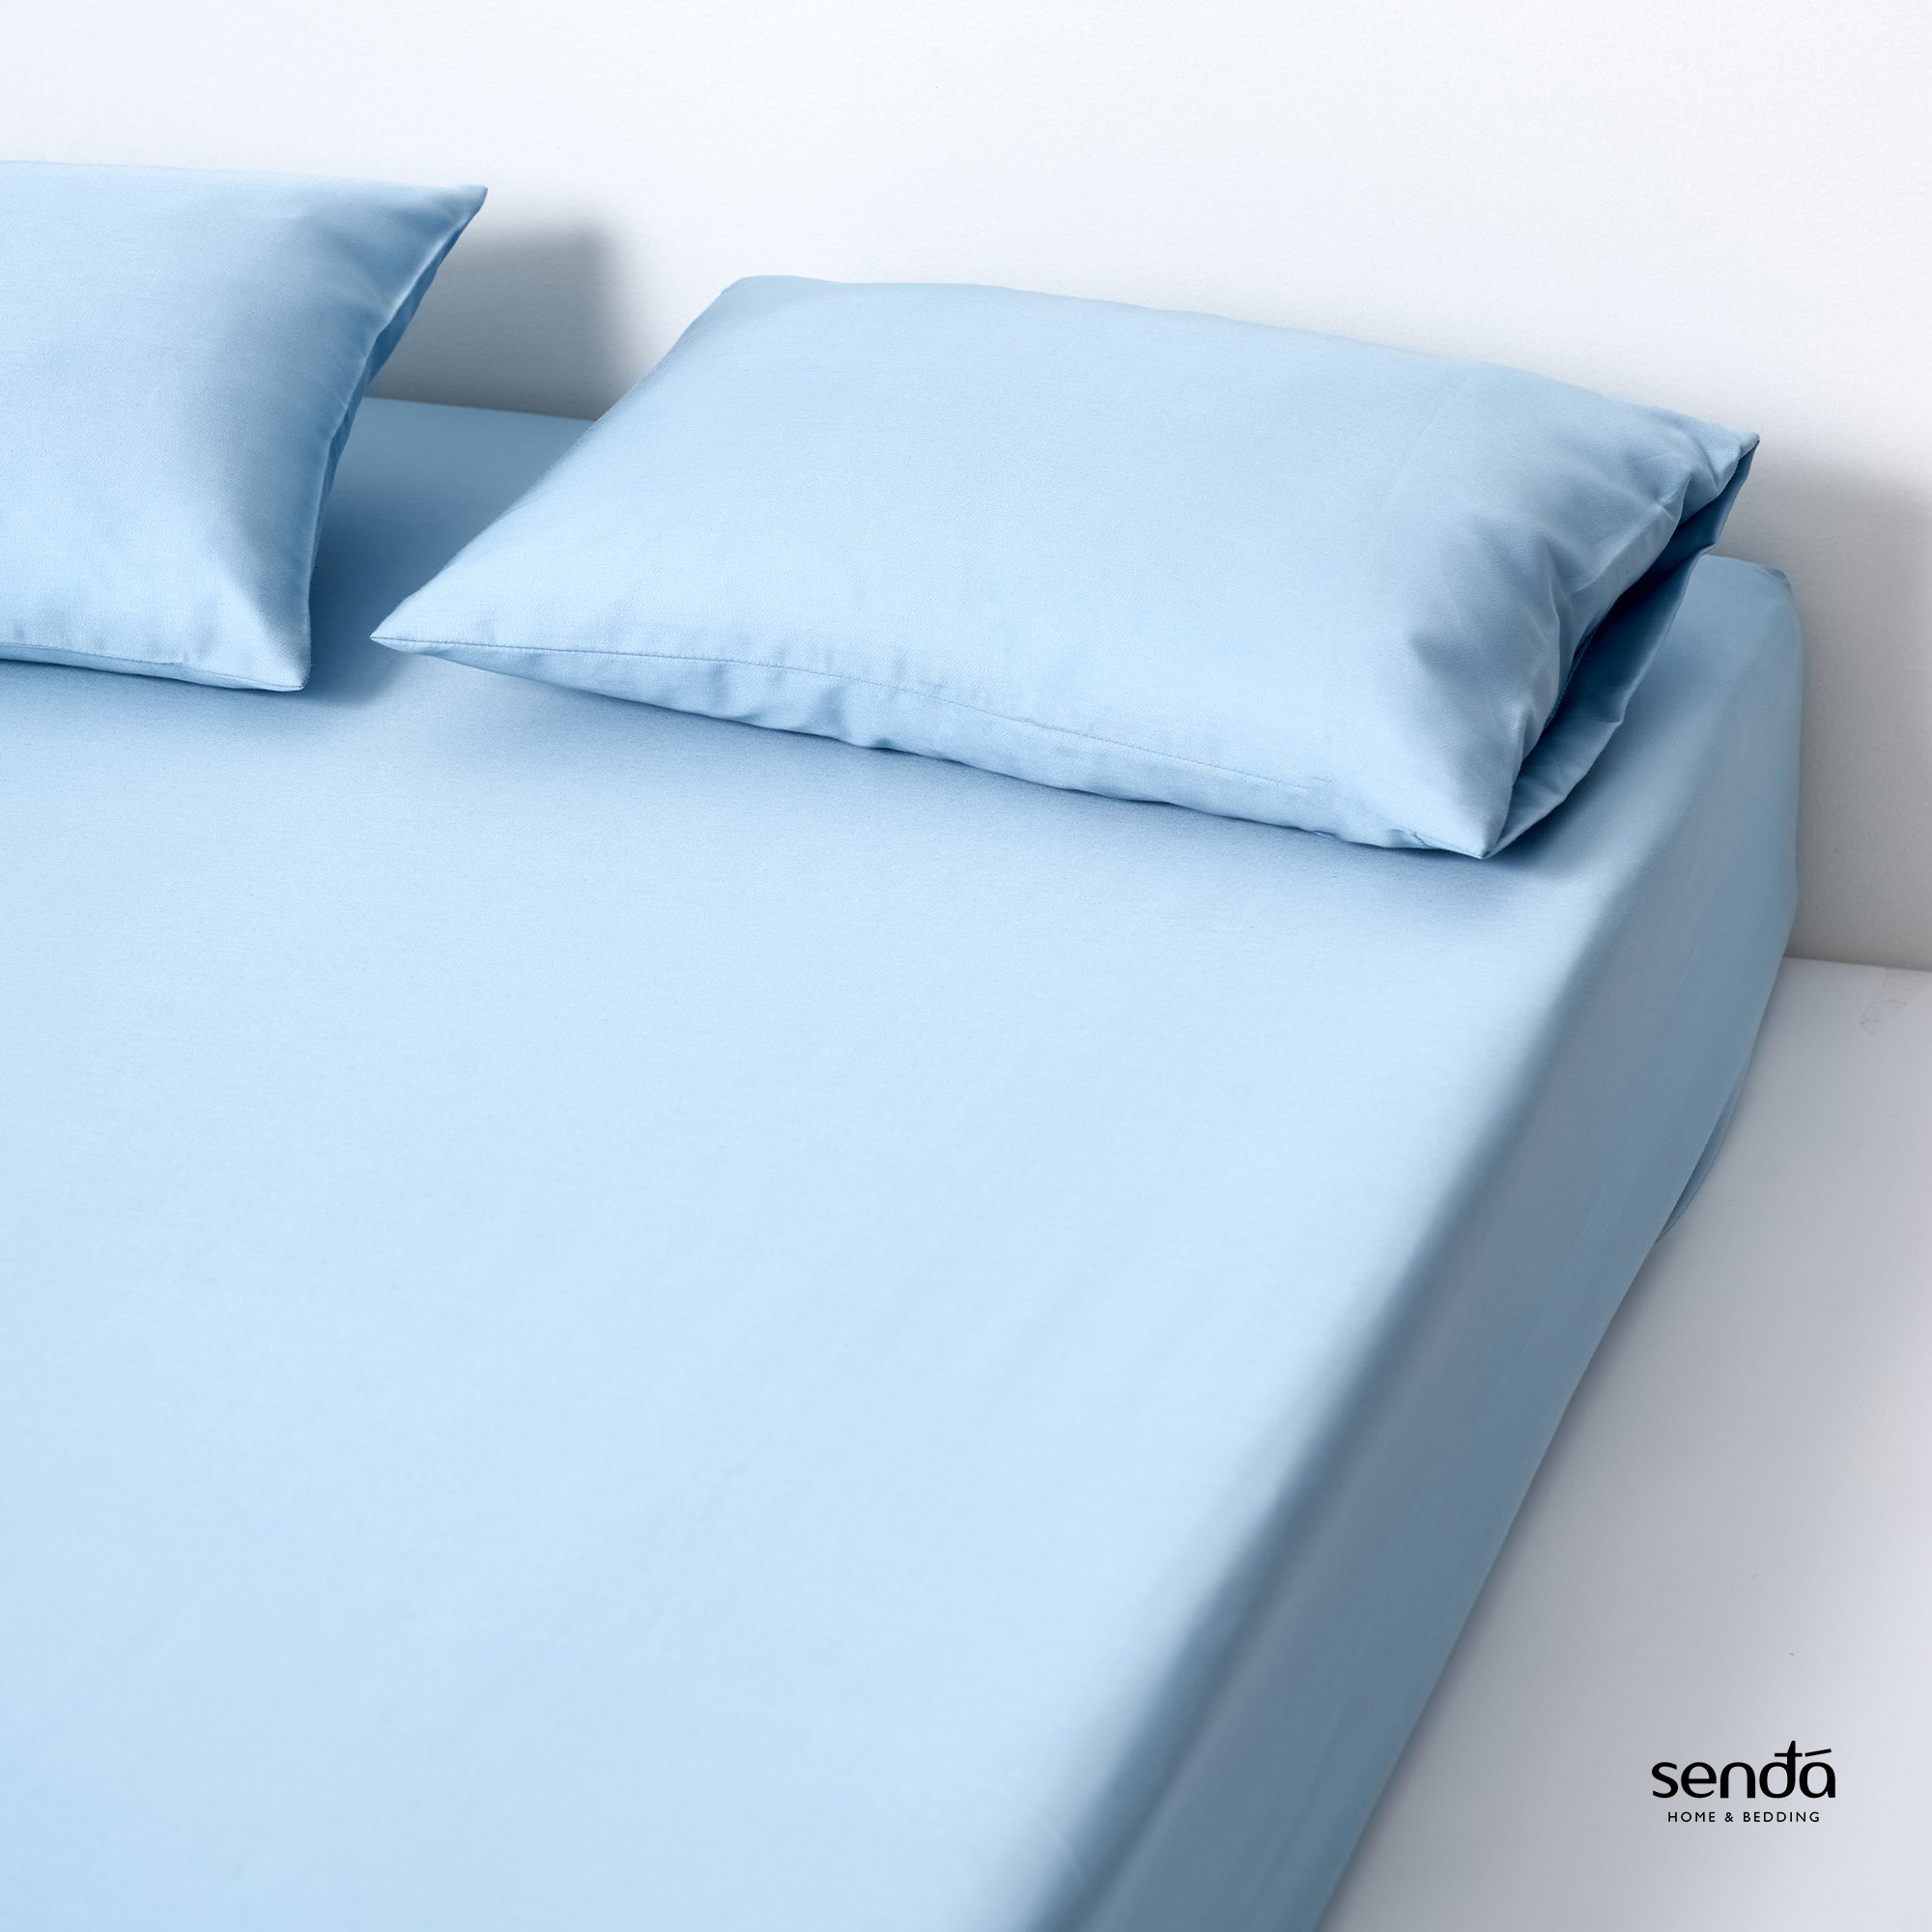 Ga giường Lụa Tencel 1m2 Sen Đá Home Bedding cao cấp trơn màu, drap bo chun trải nệm, ra lẻ bọc đệm 1m2x2m